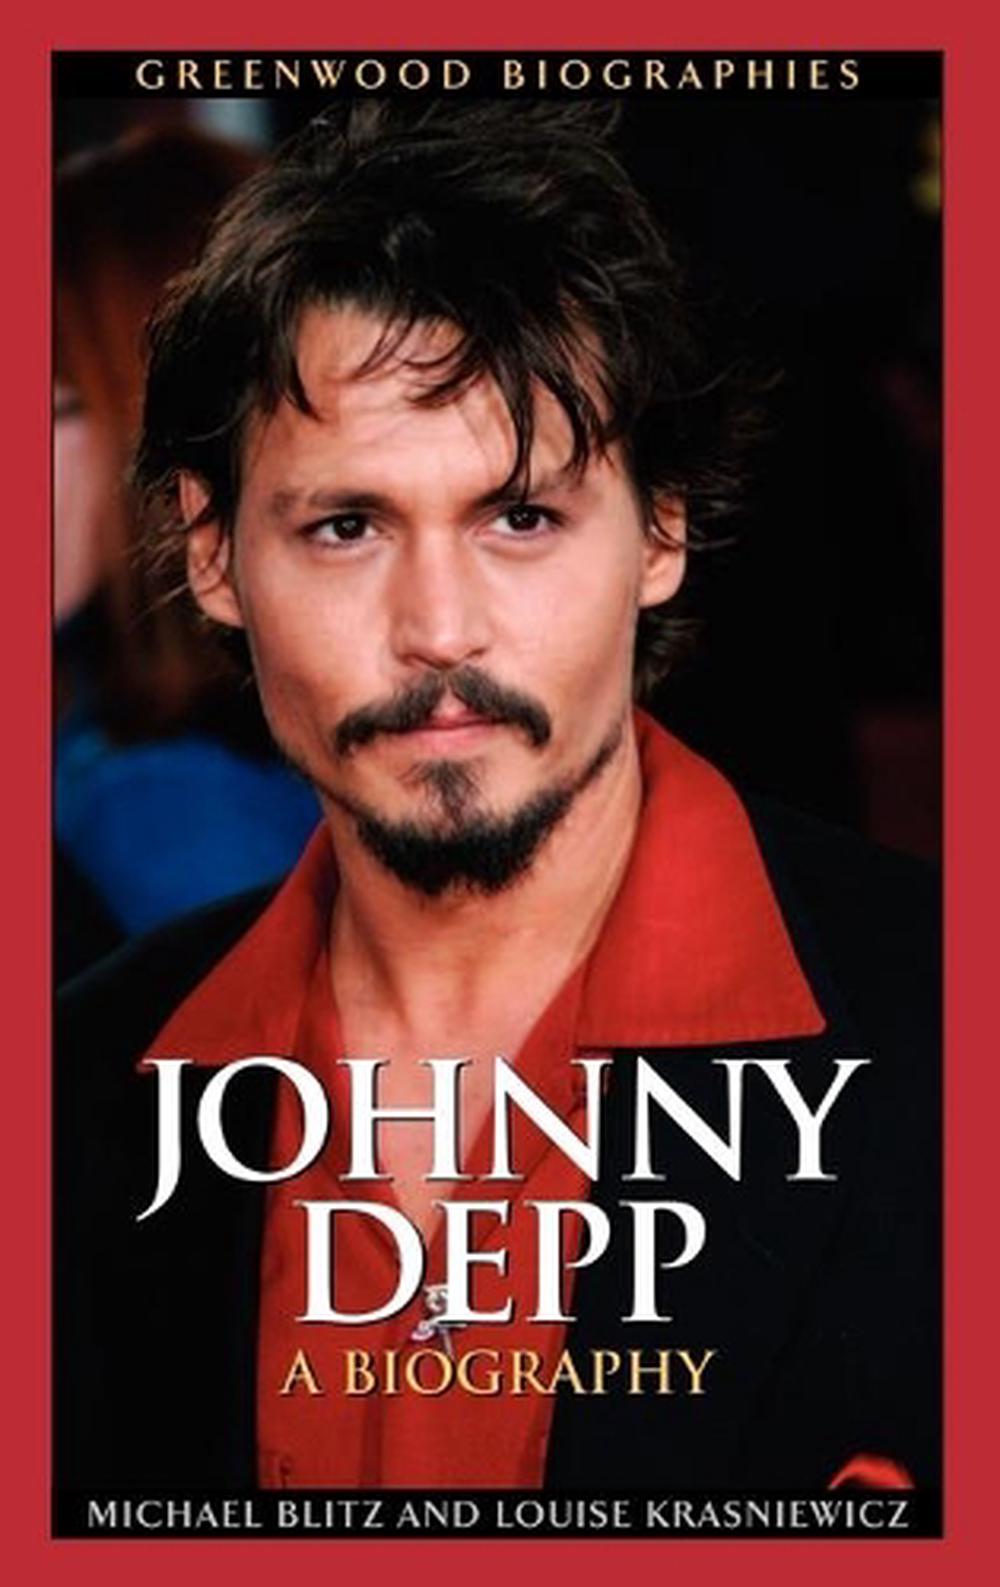 short biography johnny depp